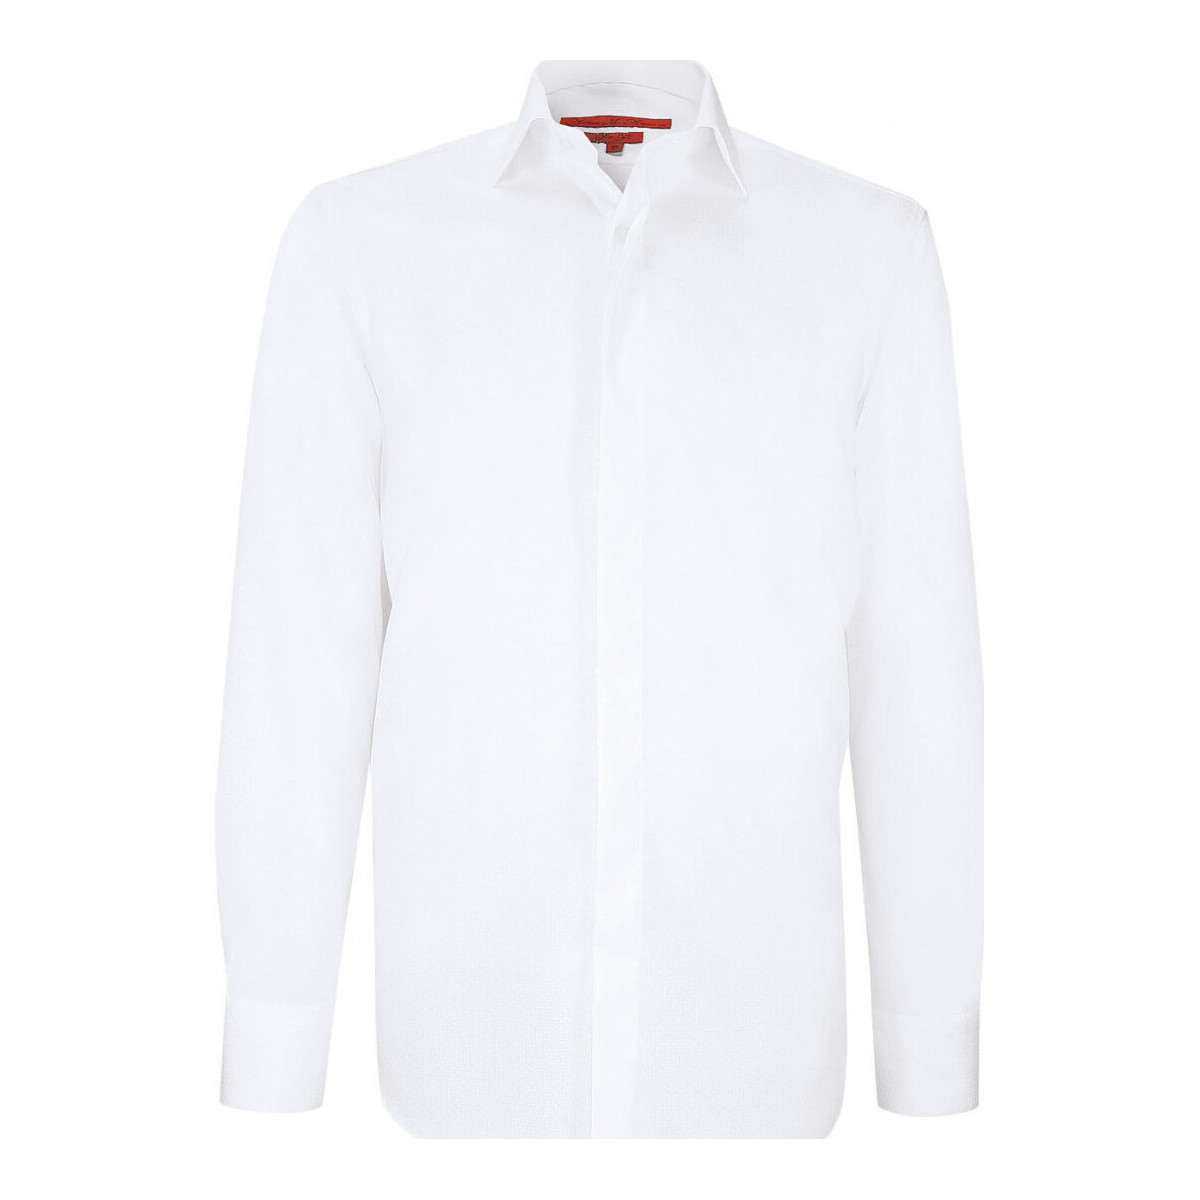 Vêtements Homme Chemises manches longues Andrew Mc Allister chemise ceremonie tissu armure ceremony blanc Blanc